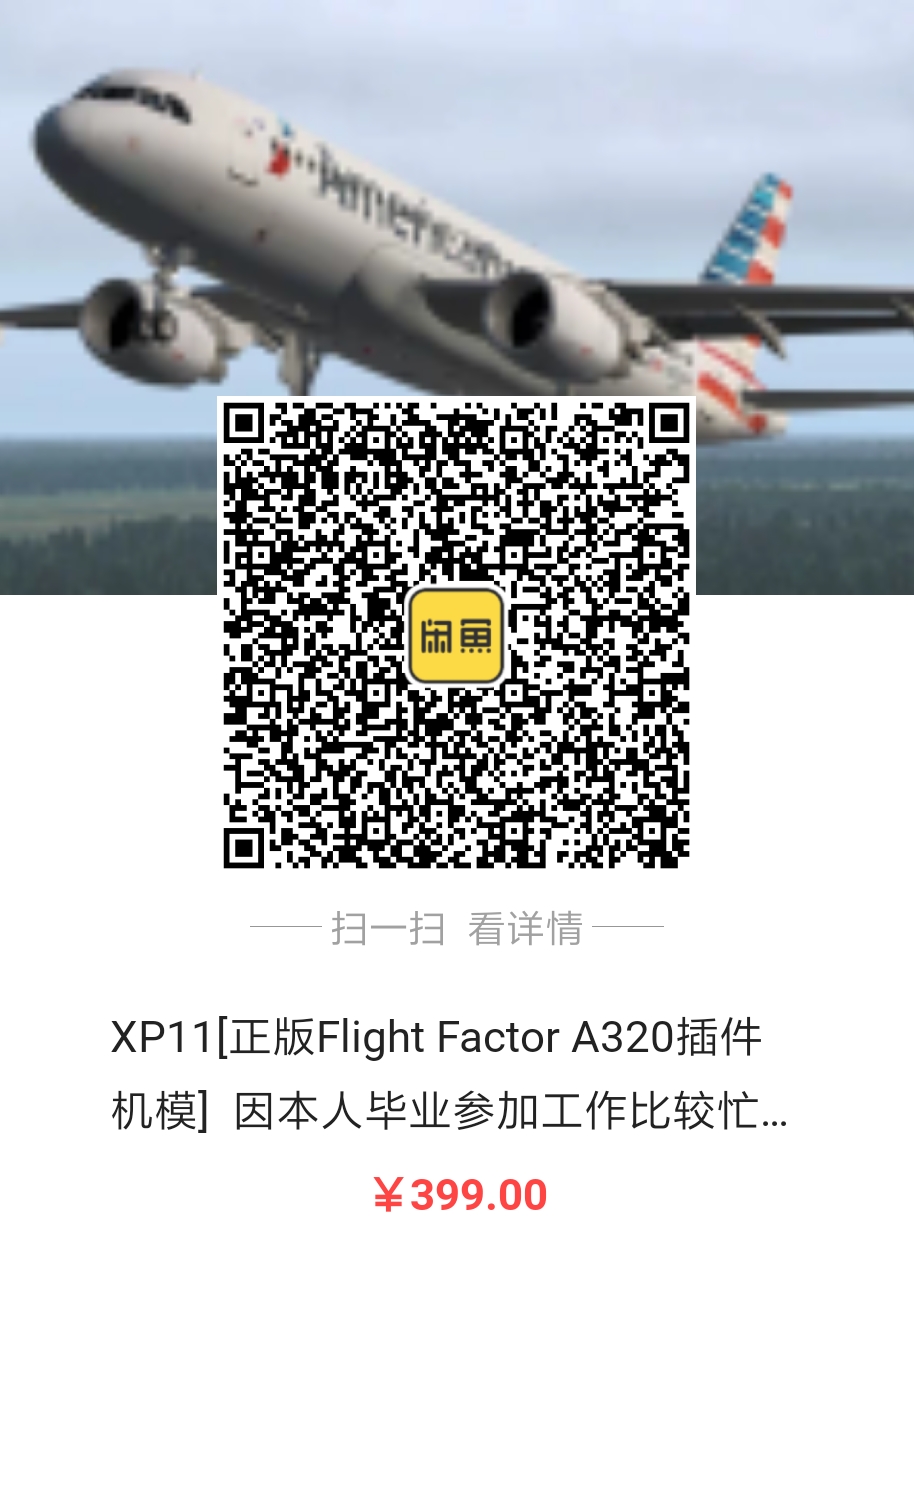 出售Flight Factor A320正版激活码，因毕业工作忙-508 